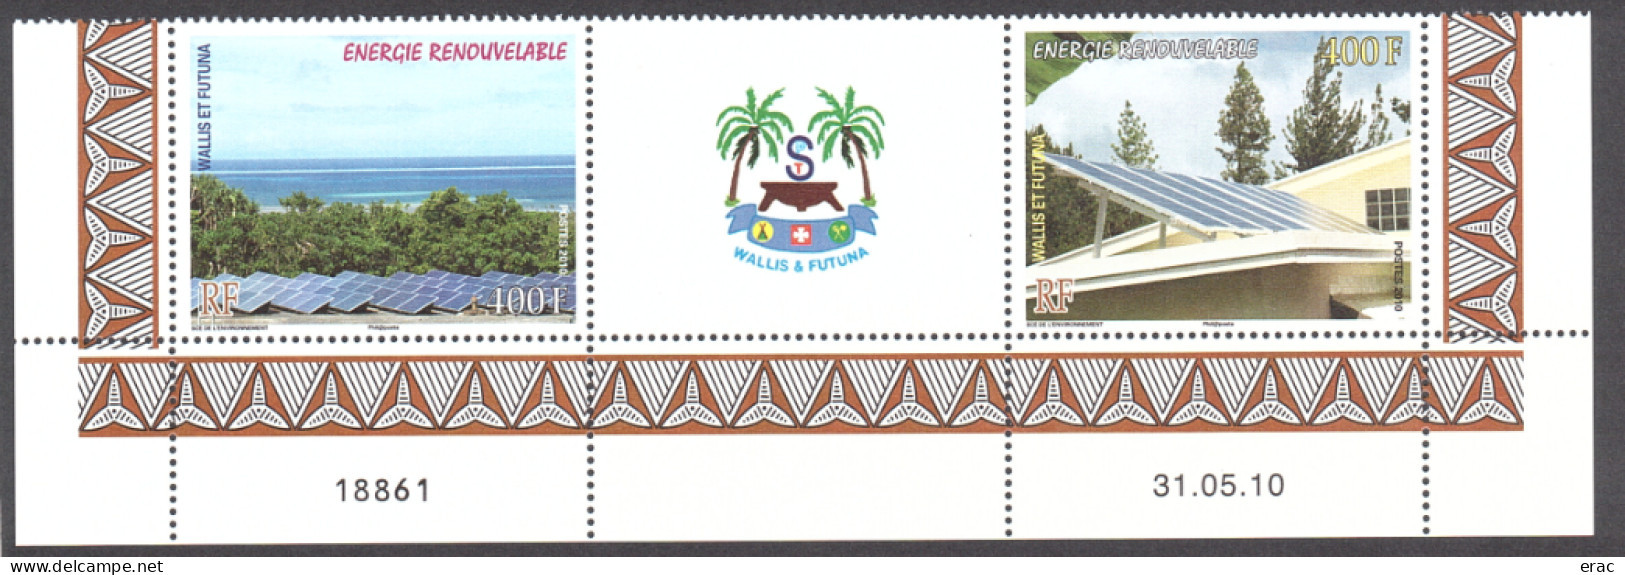 Wallis Et Futuna - 2010 - Bas De Feuille Daté Des N° 737 + 738 + Vignette Centrale - Neuf ** - Energie Renouvelable - Unused Stamps